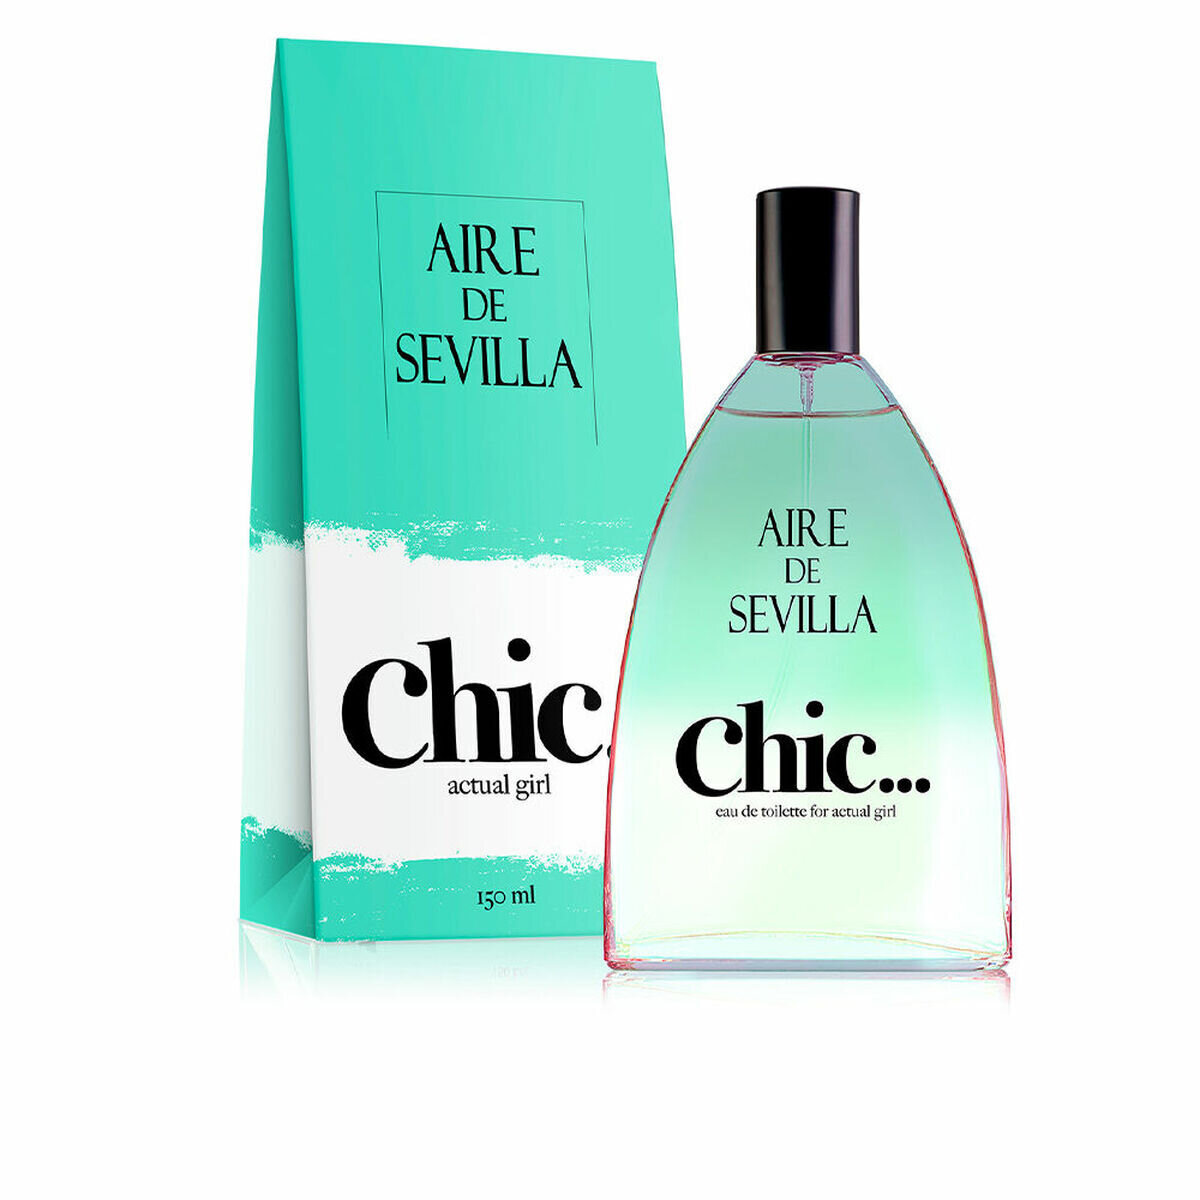 Aire Sevilla Chic Eau De Toilette 150 ml